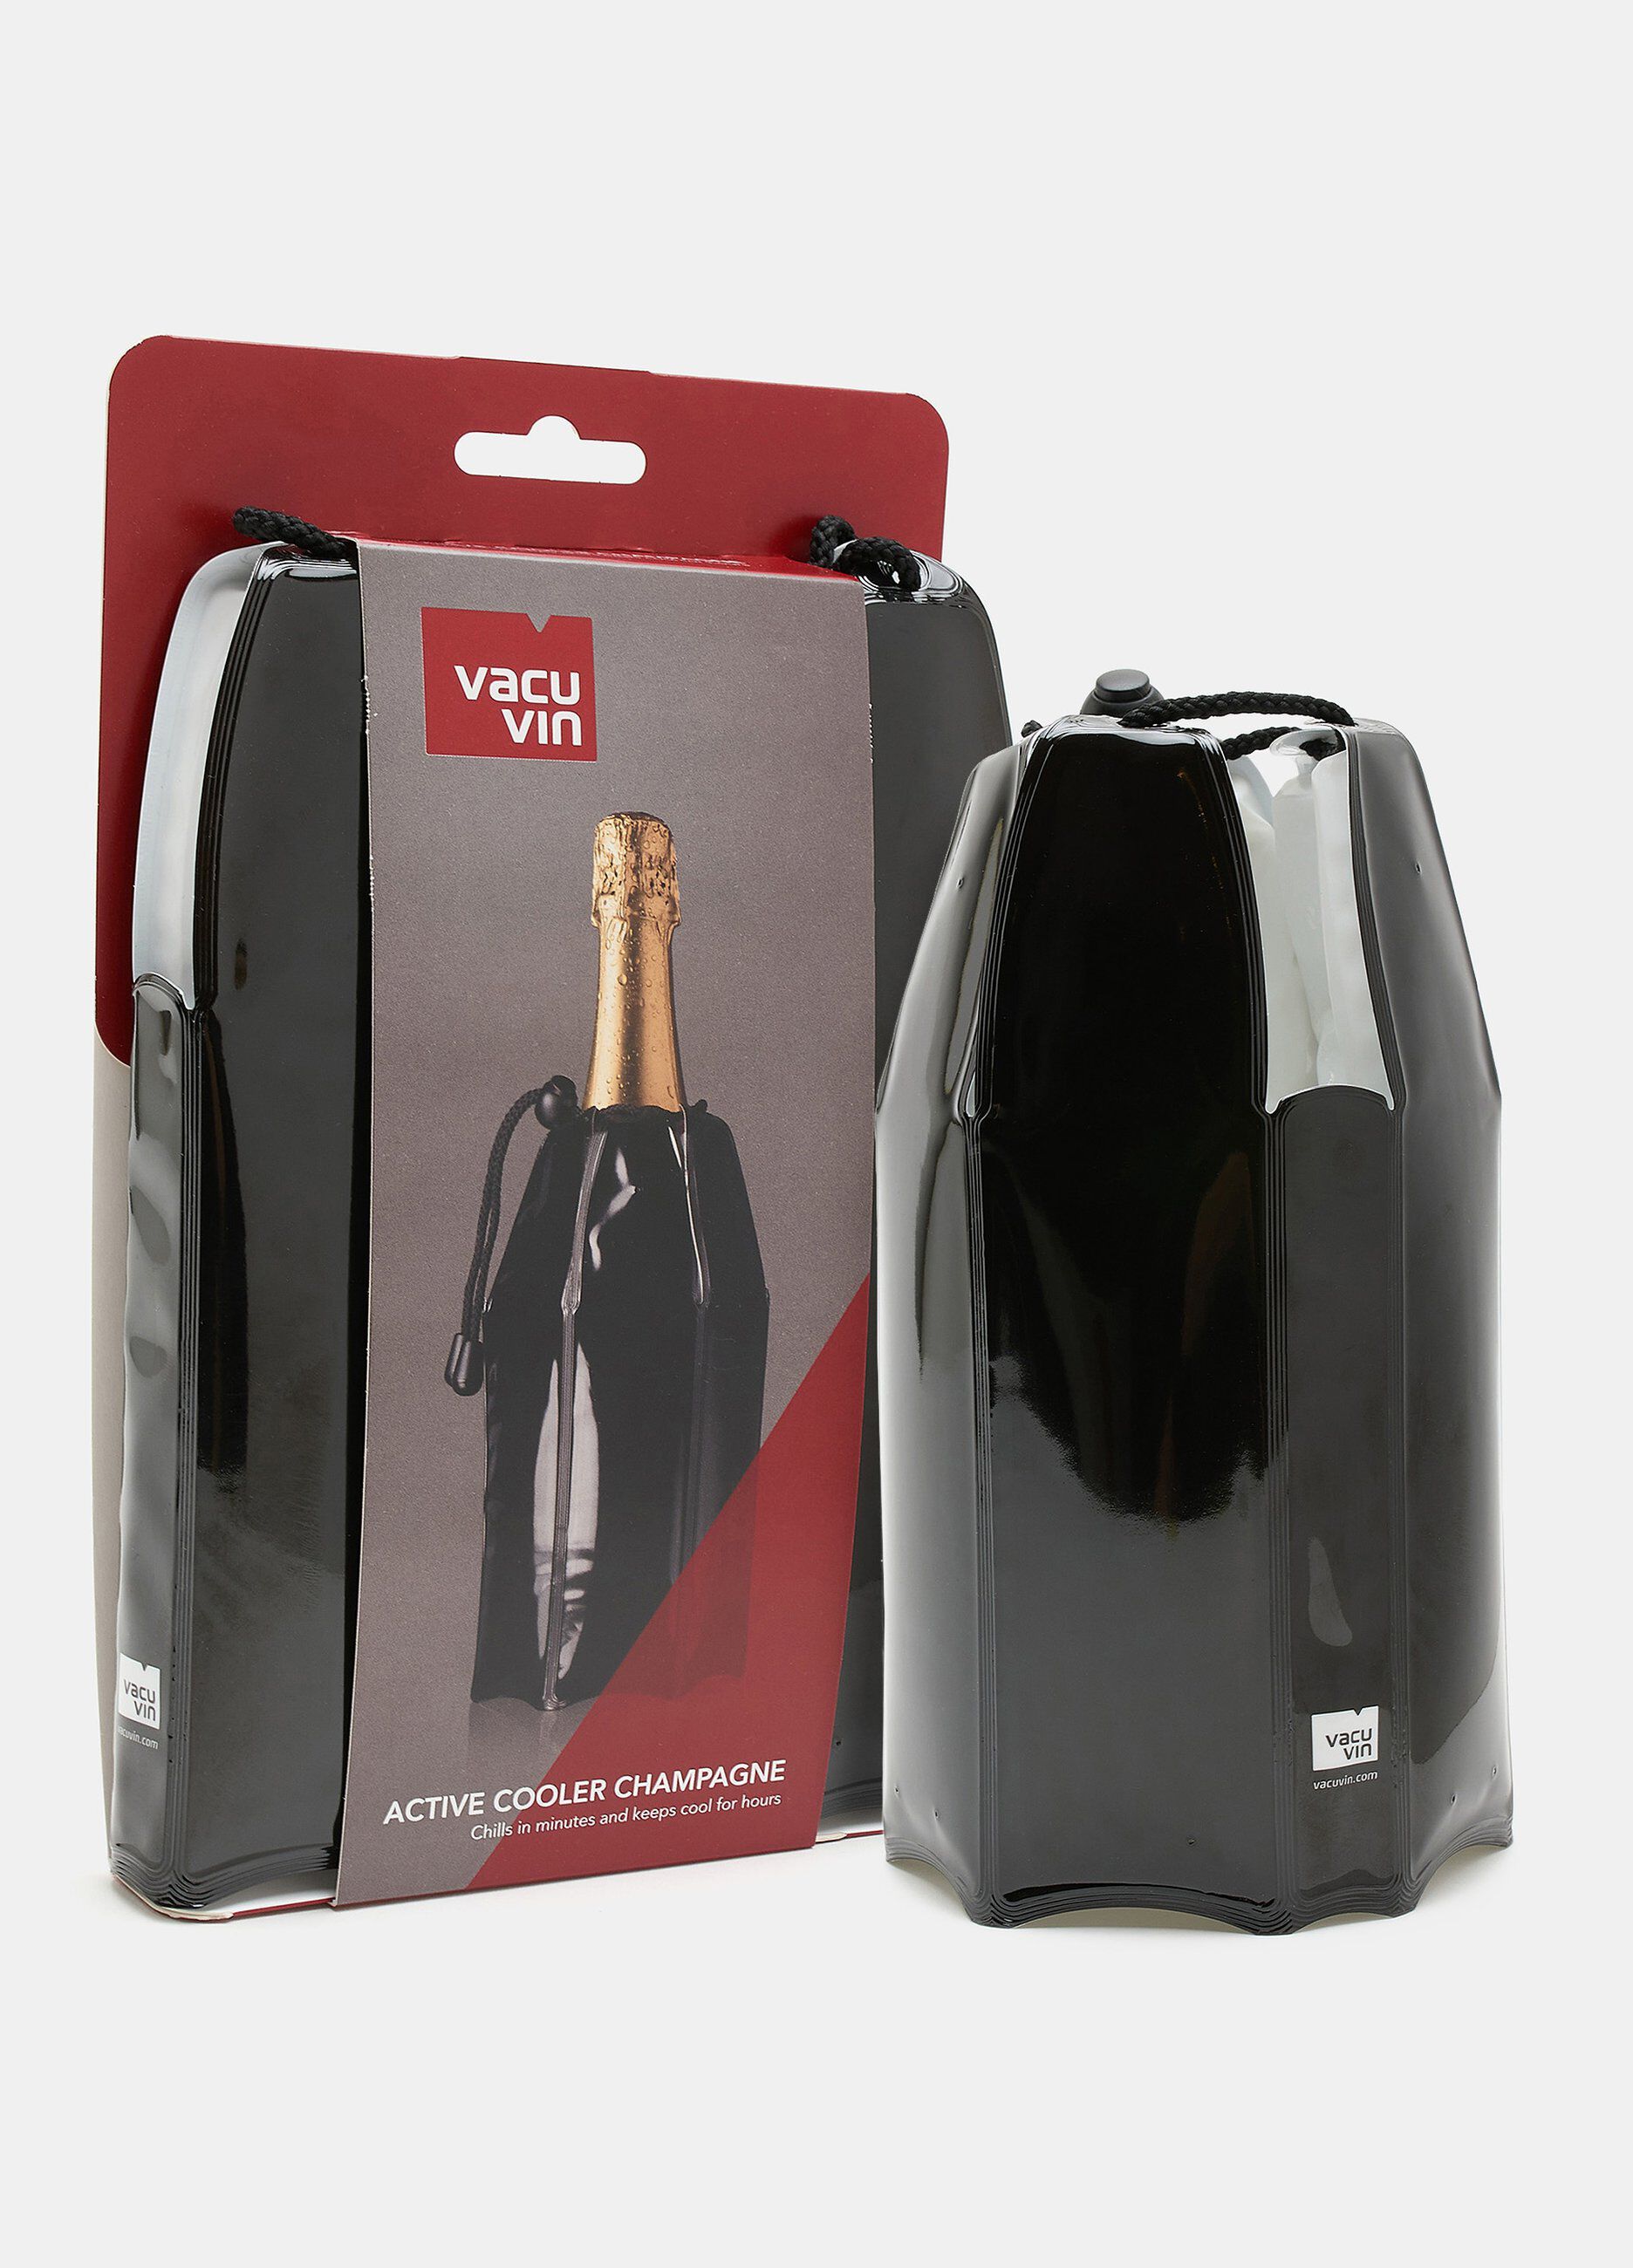 Giacchetta wine cooler per vino_1